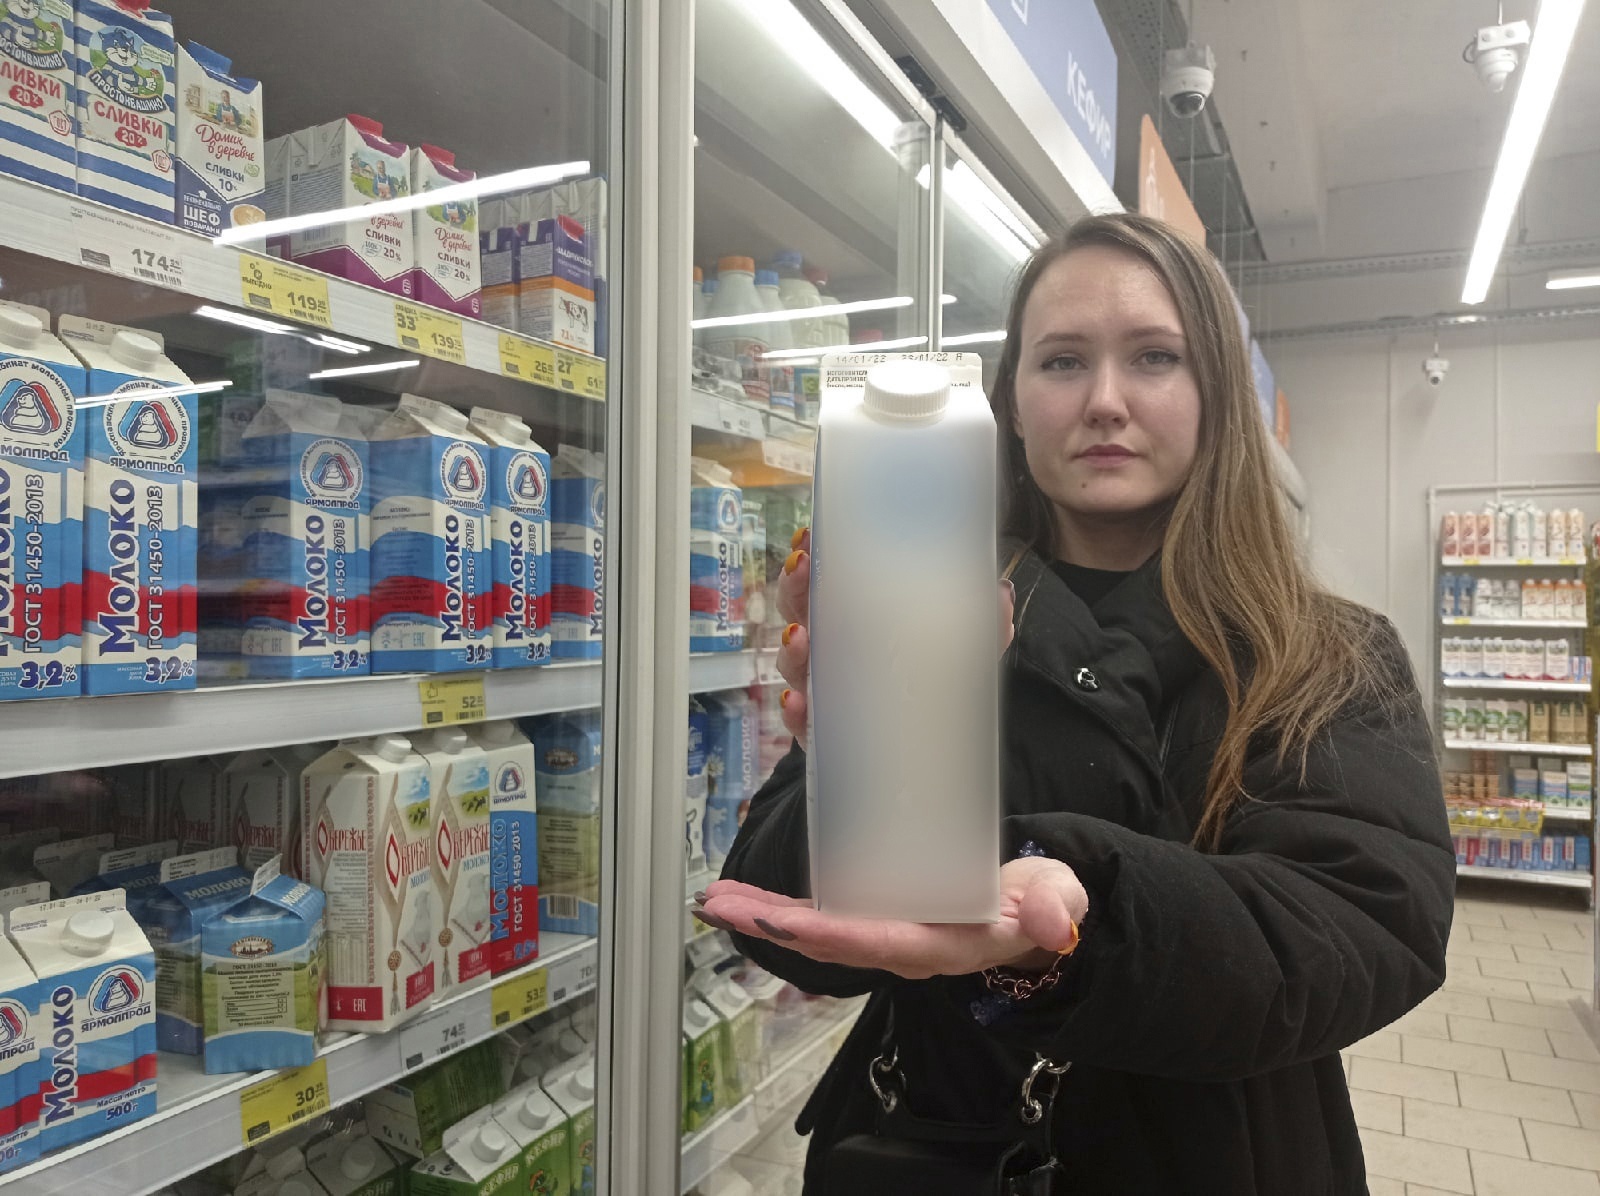  "Цены вздуют": ярославцы рассказали о ситуации с молоком